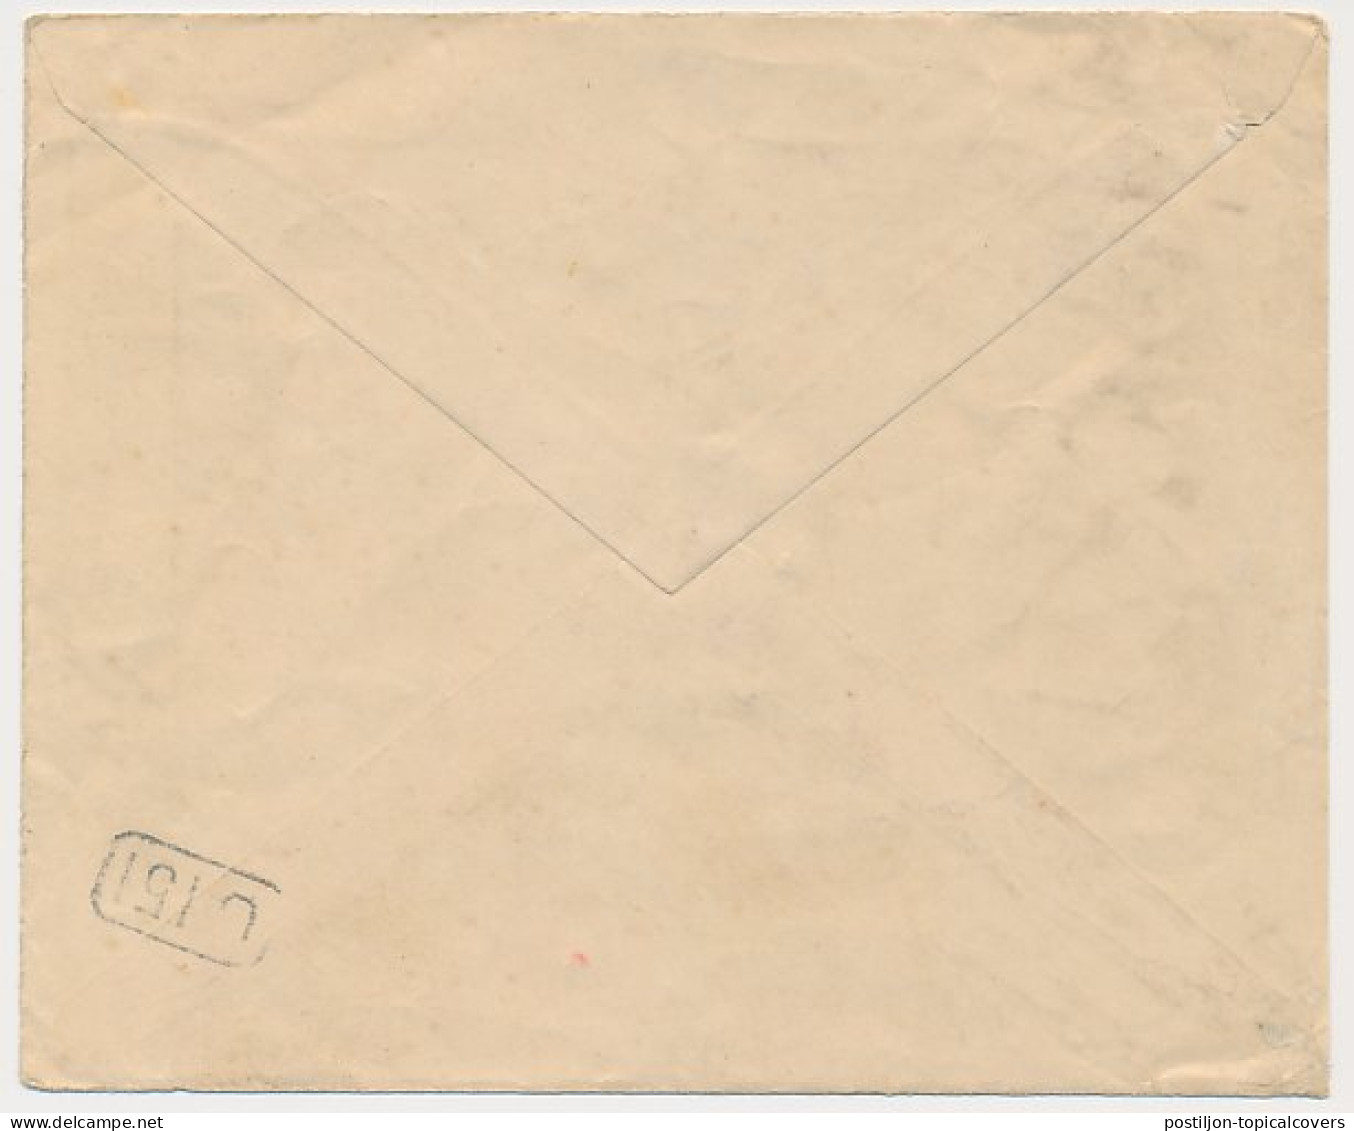 Bestellen Op Zondag - Ned. Indie - Utrecht - Den Dolder 1923  - Cartas & Documentos